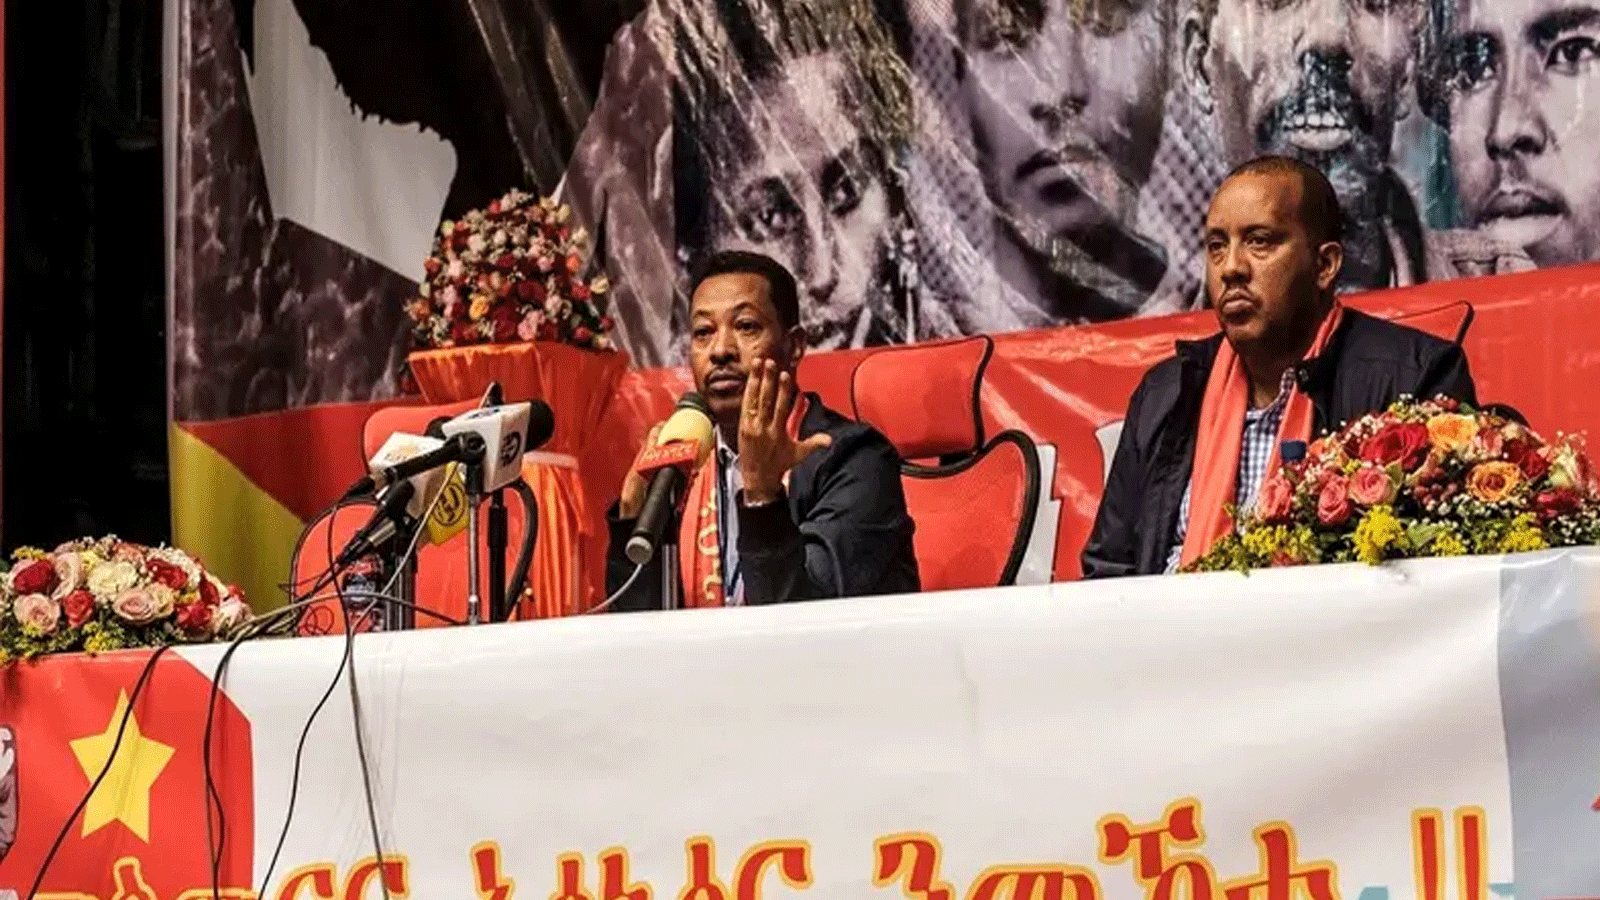 عالم جبري وحيد (يسار) وغيتاتشو رضا (يمين) يخاطبان الجمهور خلال المؤتمر العام الطارئ الأول لجبهة تحرير شعب تيغراي (TPLF) في ميكيلي، إثيوبيا.